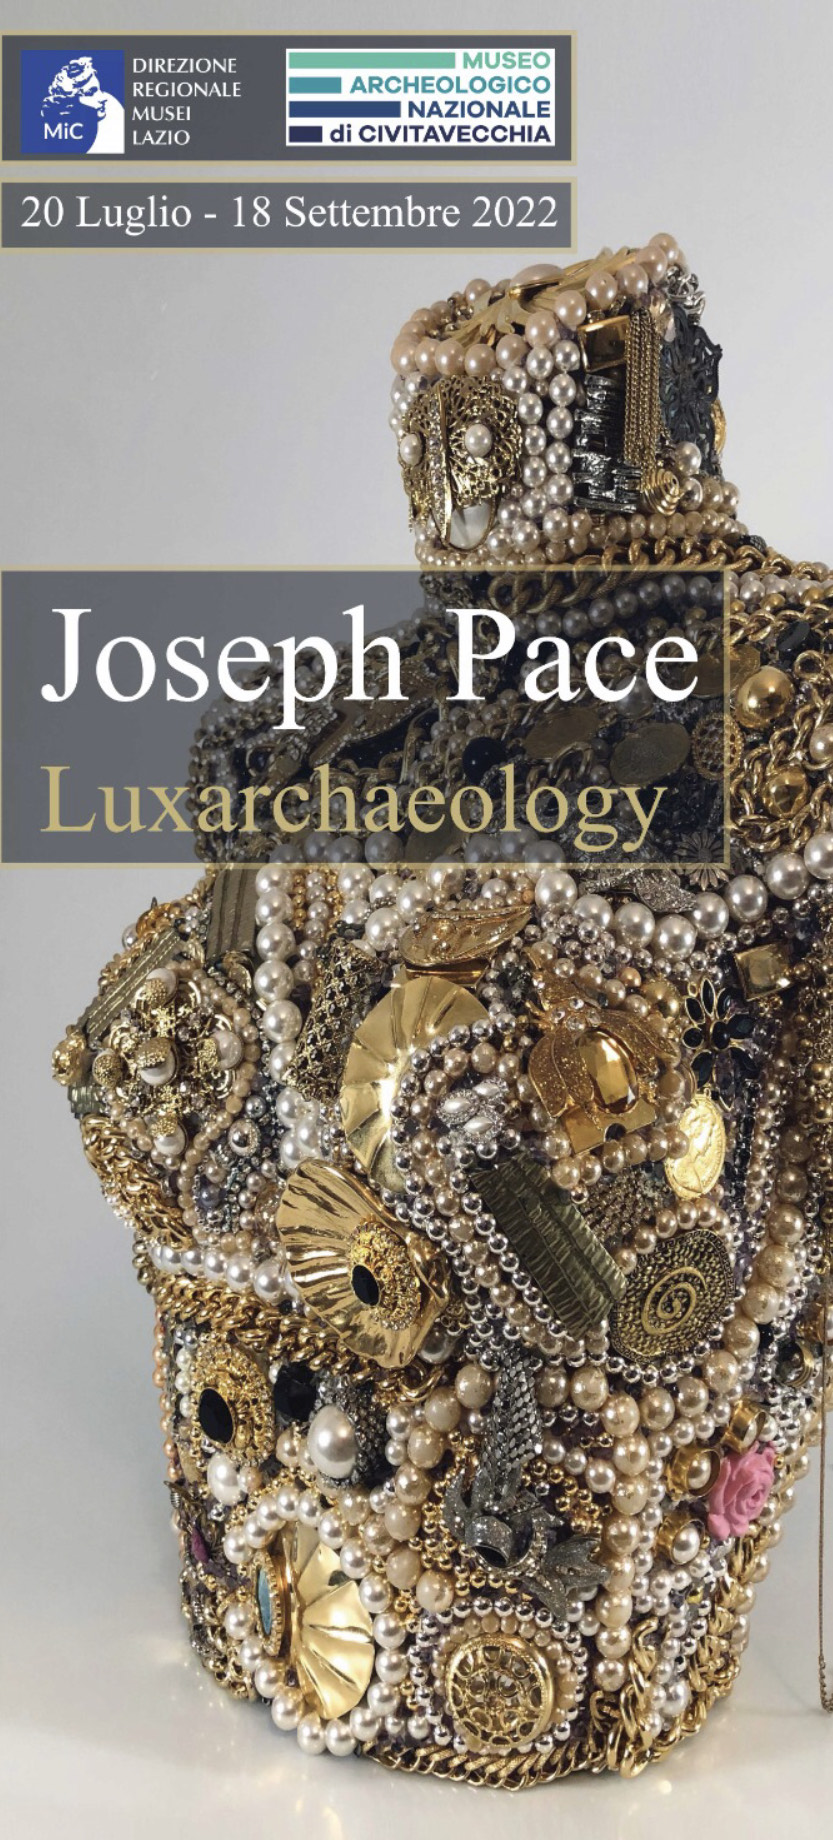 La locandina della mostra di Joseph Pace